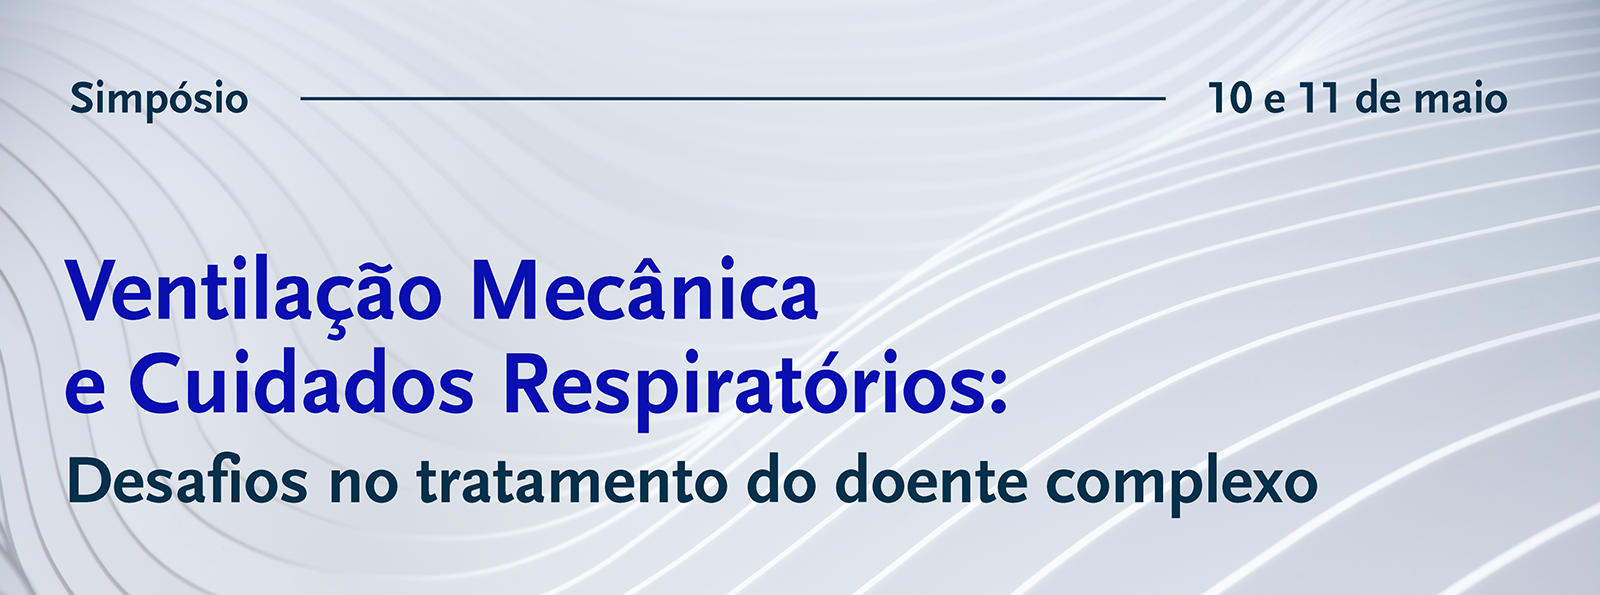 Especialistas vo discutir Ventilao Mecnica e Cuidados Respiratrios na FMUP